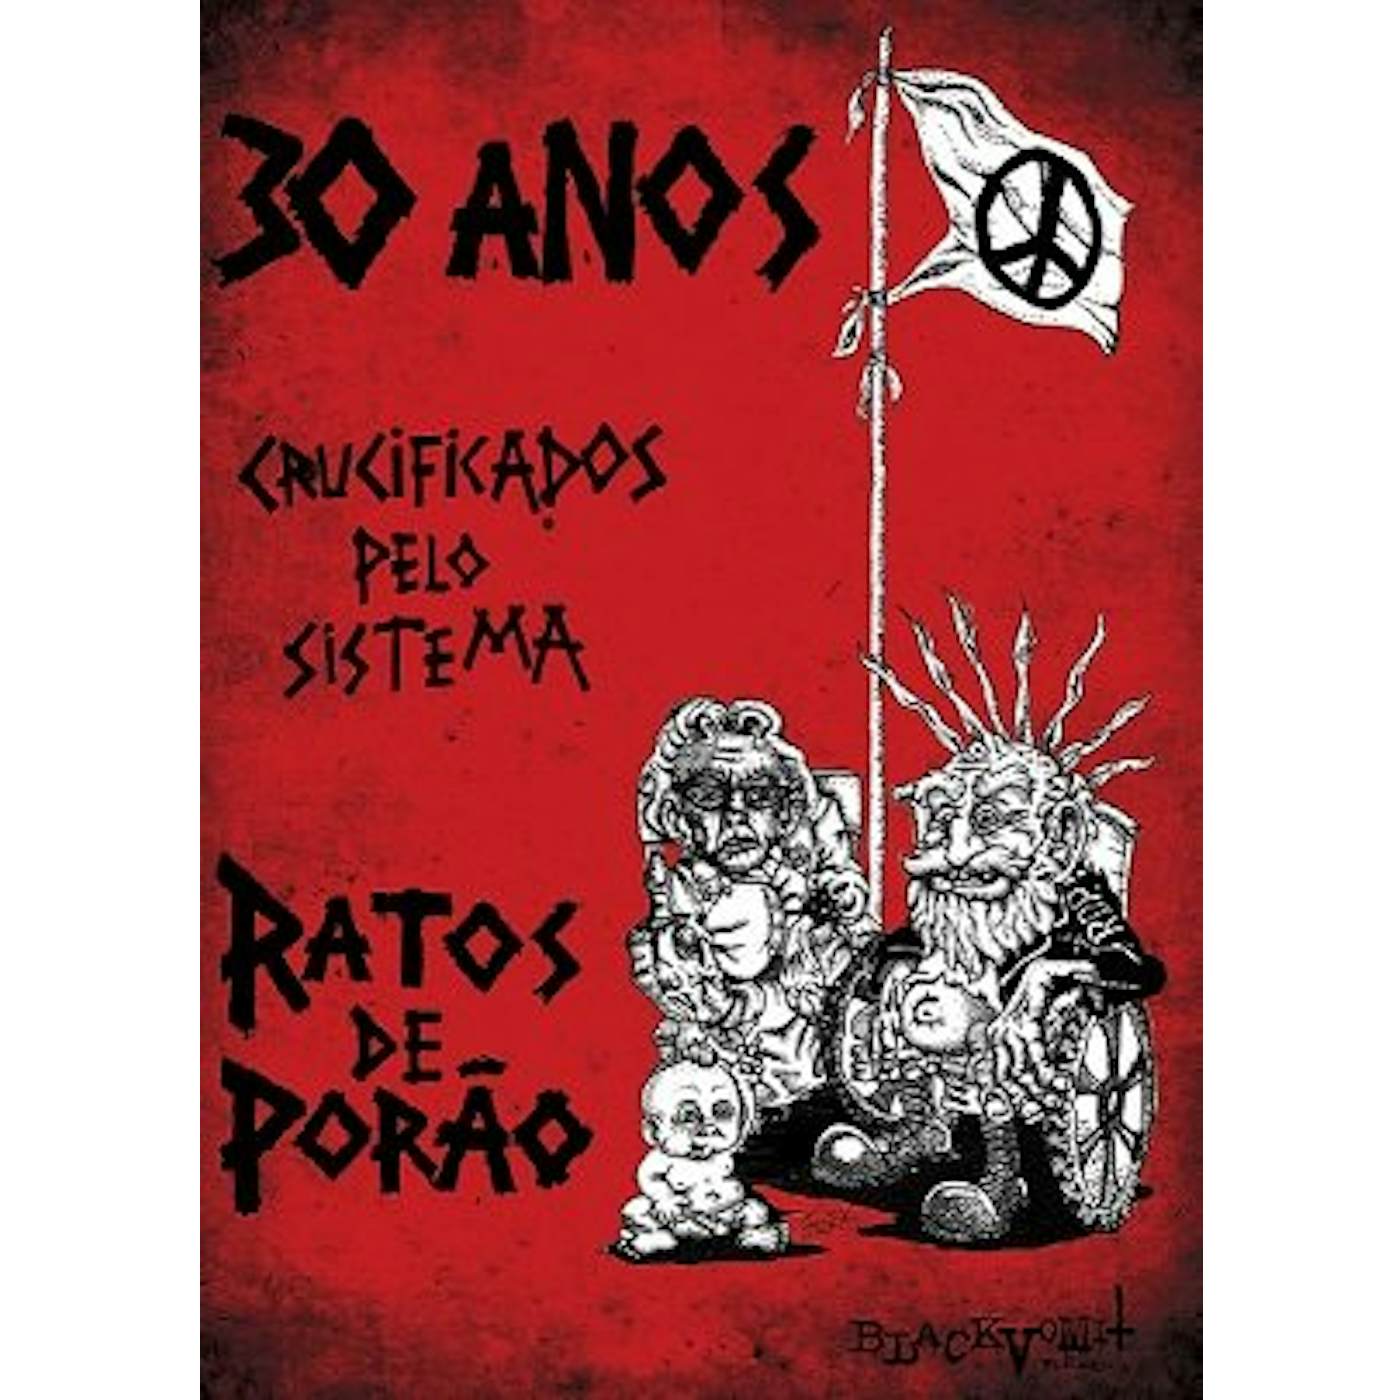 Ratos De Porão 30 ANOS CRUCIFICADOS PELO SISTEMA DVD